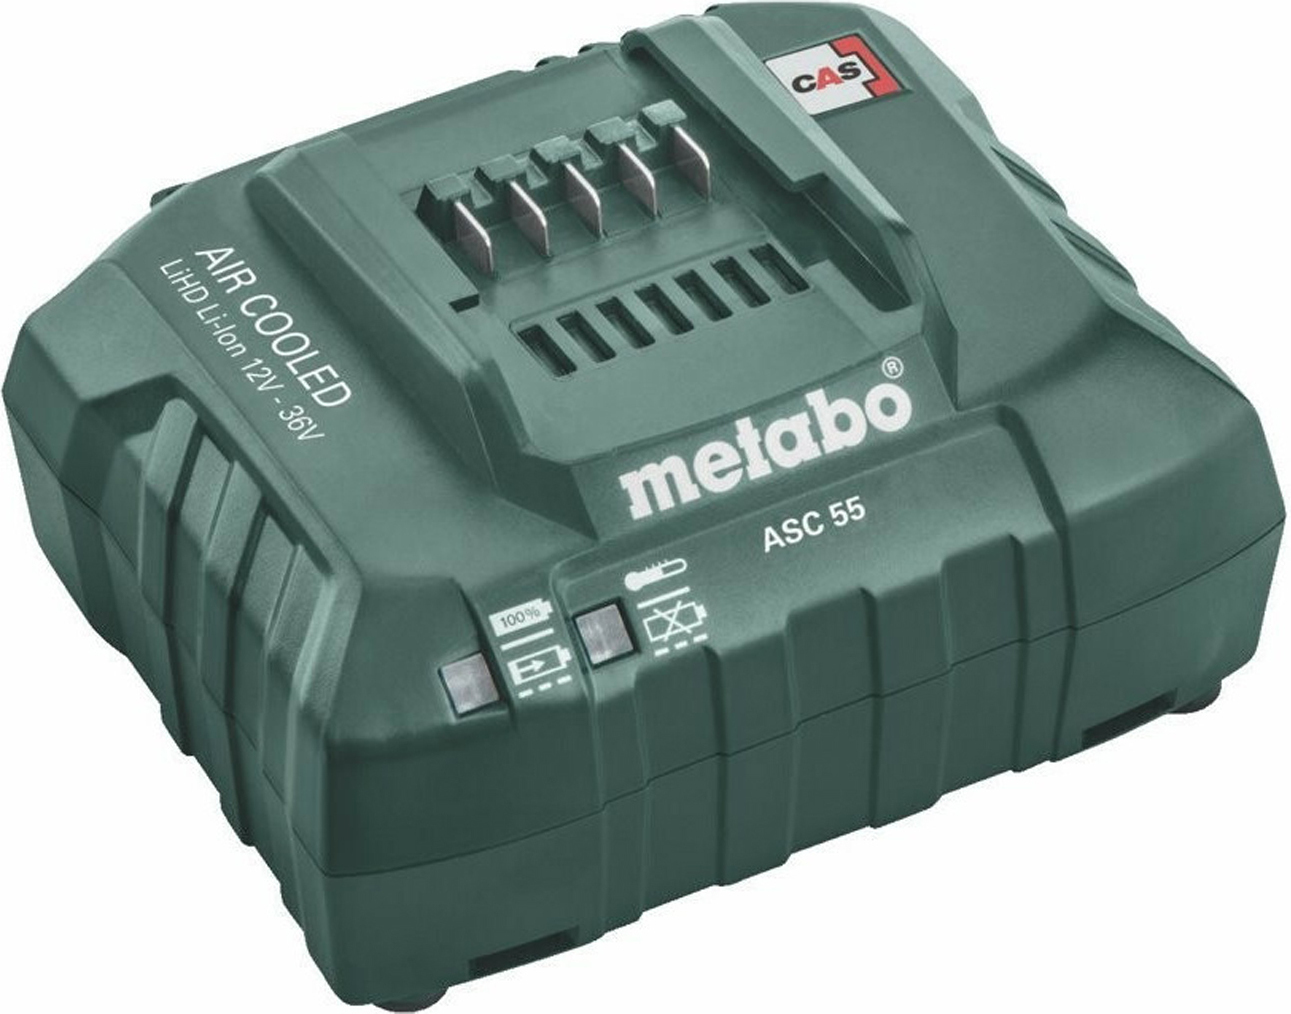 Φορτιστής ASC 55 για Μπαταρίες Εργαλείων 12-36V Metabo - 2